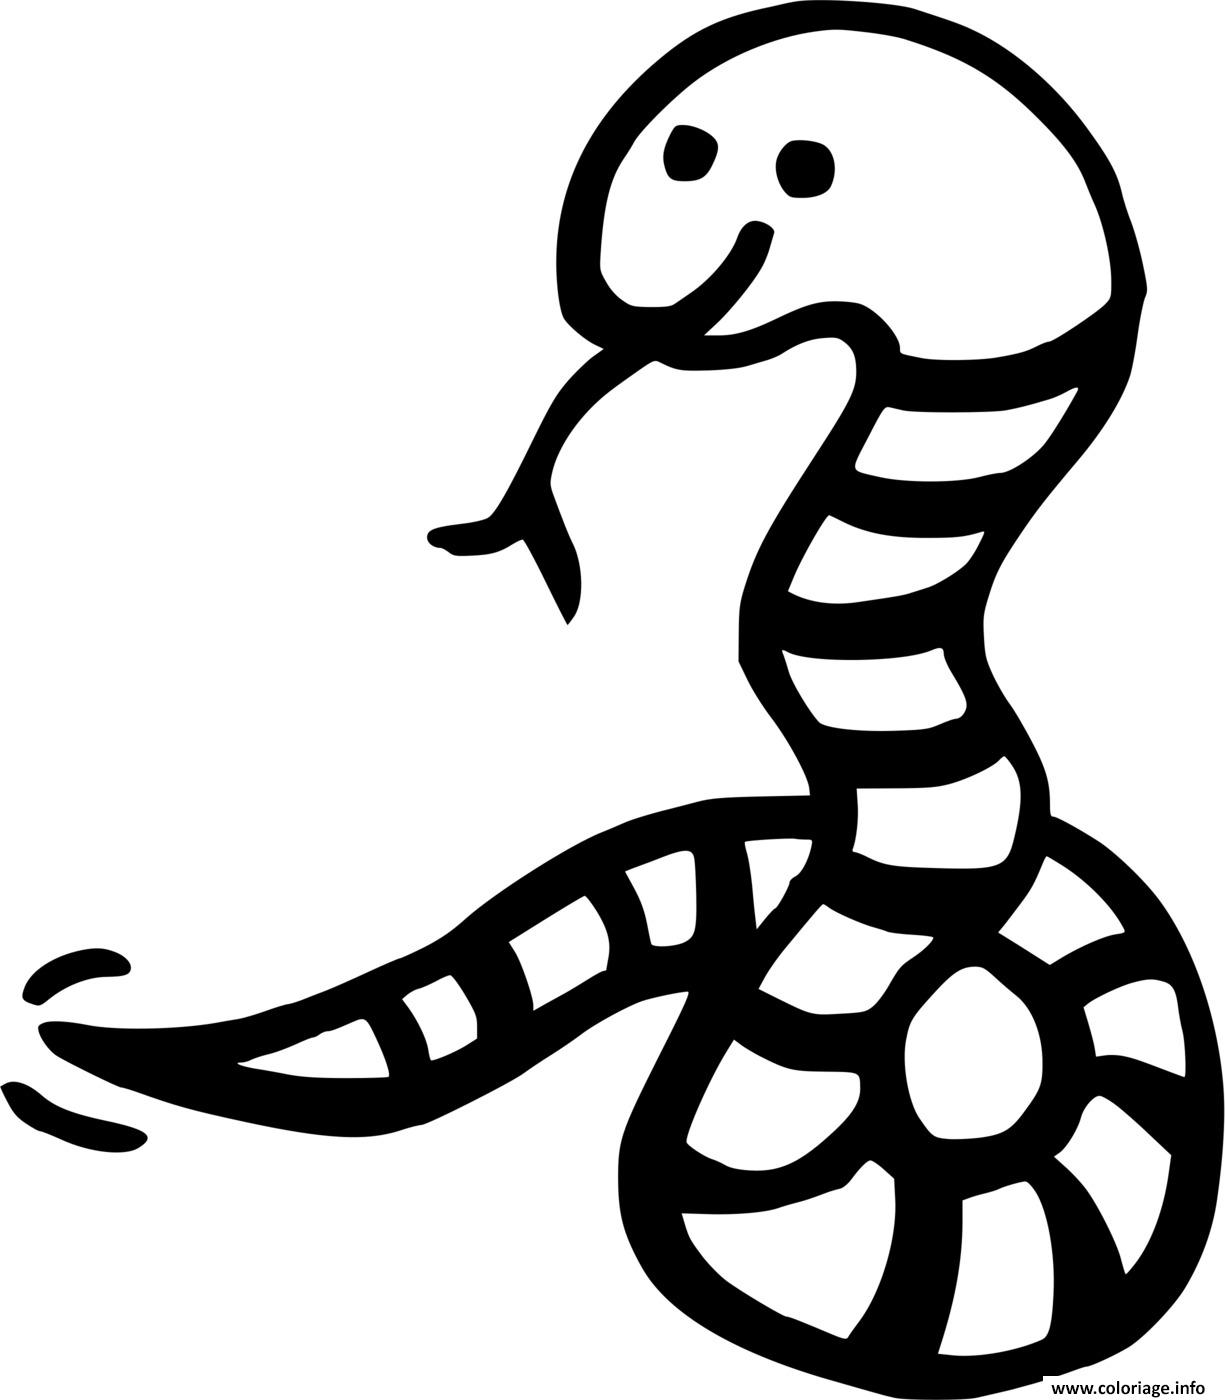 Dessin dessin d un serpent Coloriage Gratuit à Imprimer